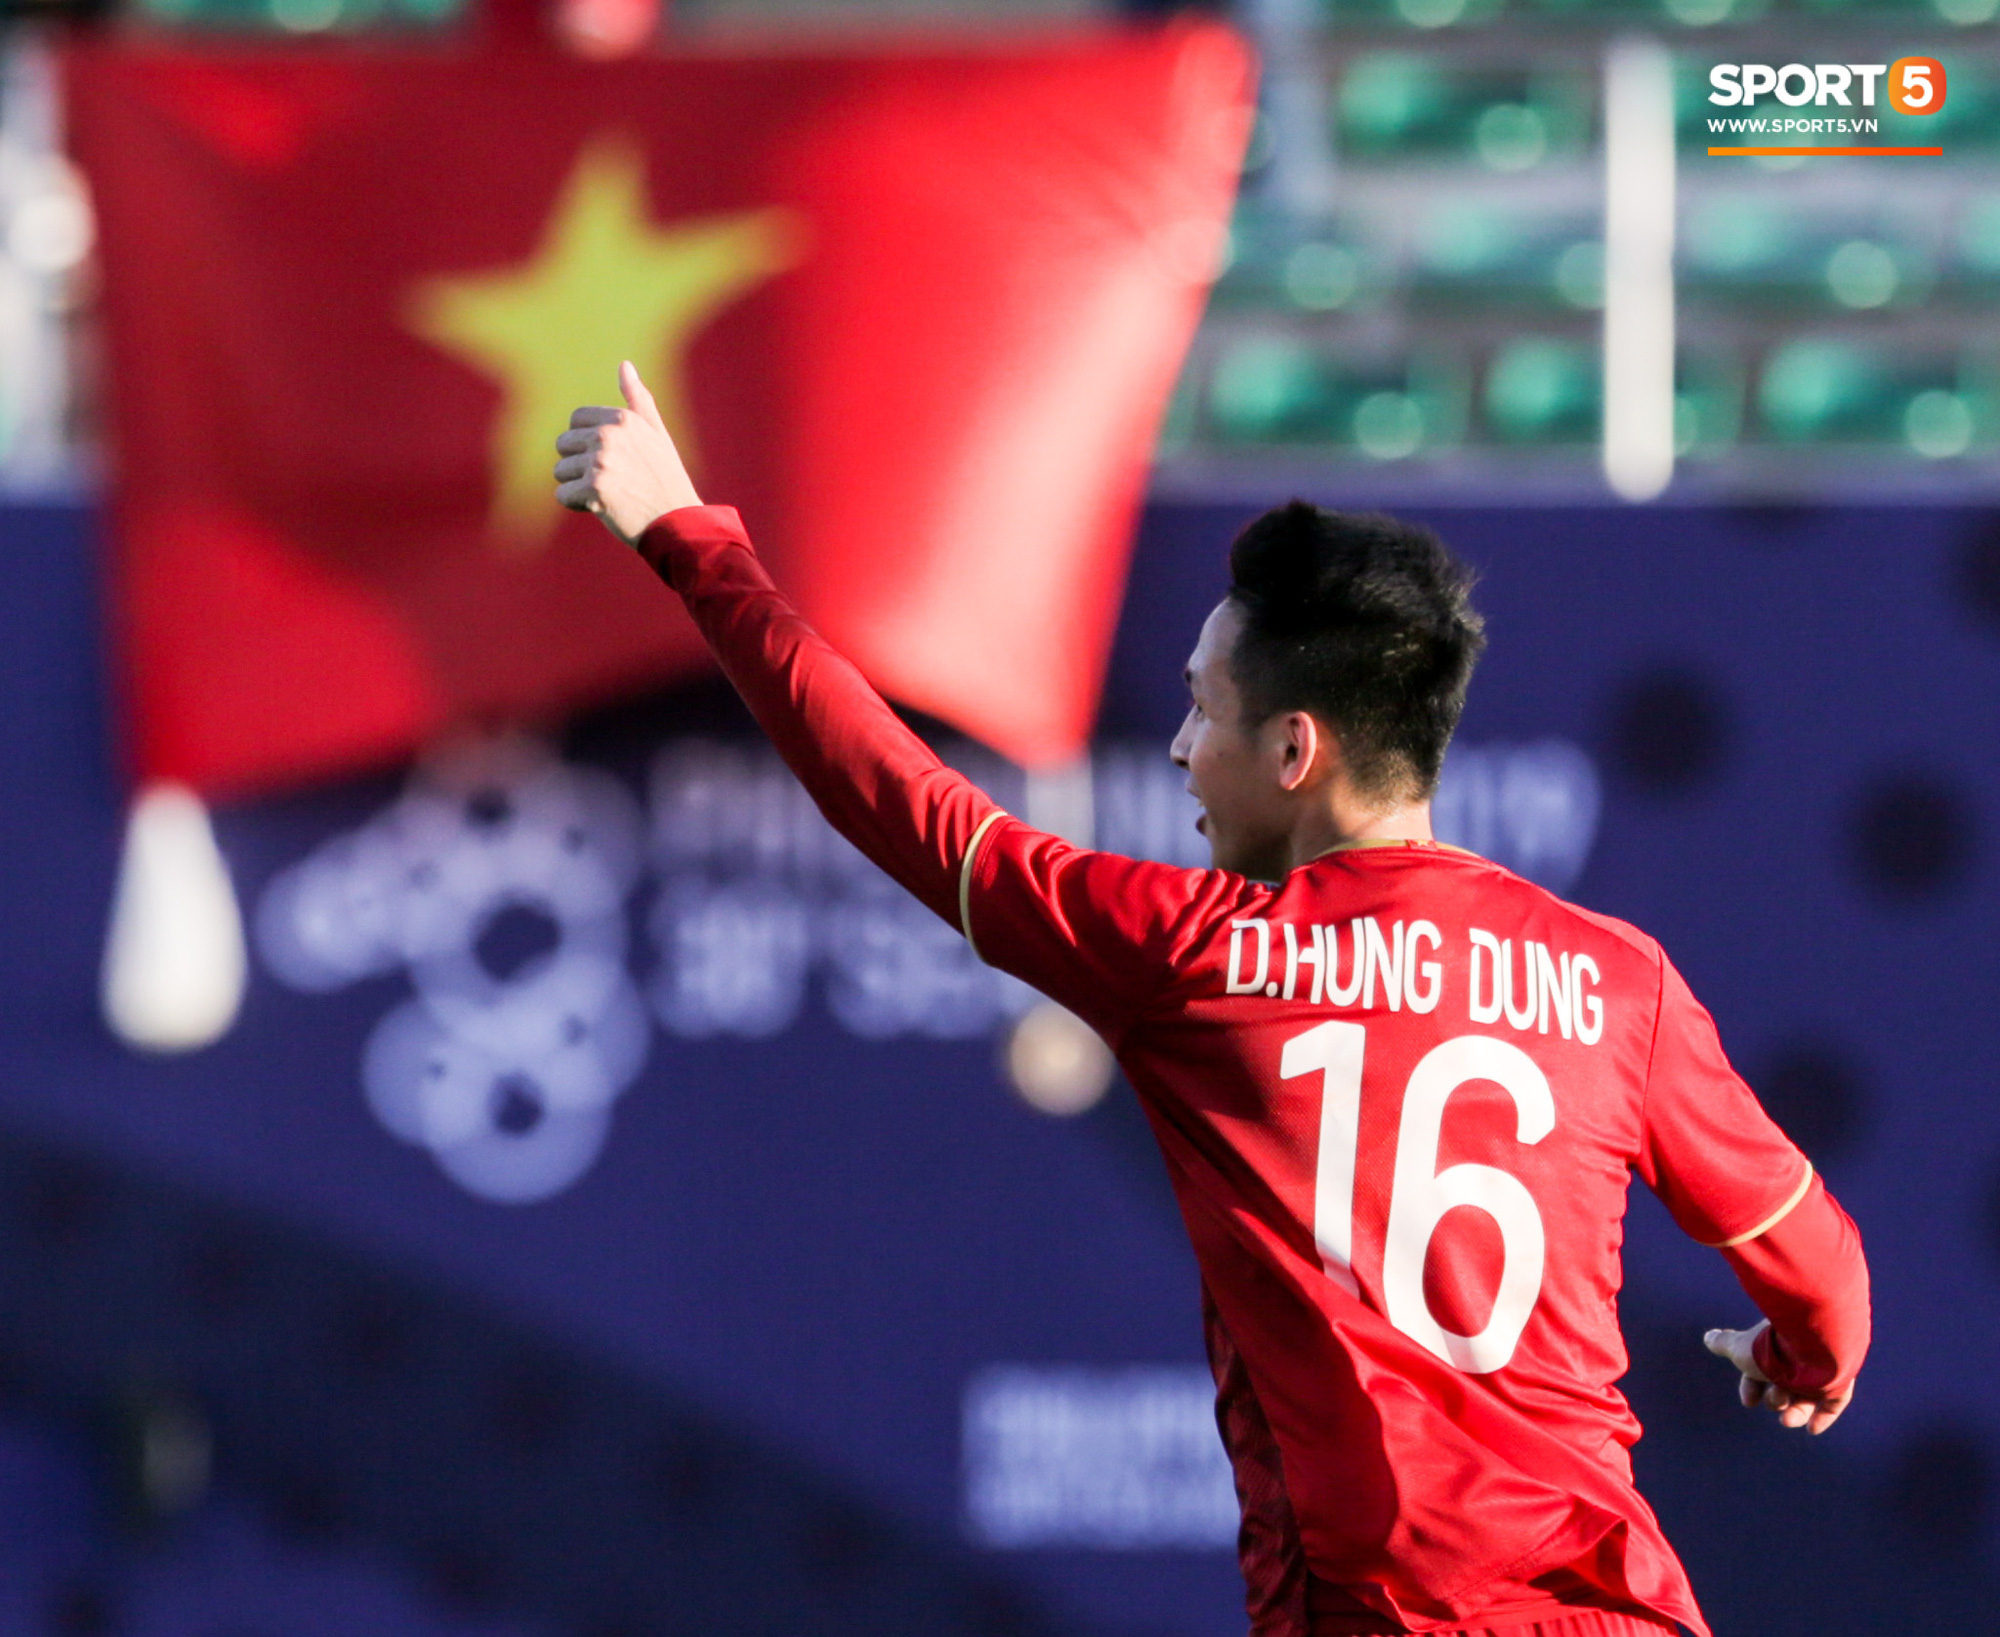 Trung vệ U22 Việt Nam đè đầu cưỡi cổ đội trưởng U22 Lào, tái hiện hình ảnh của Văn Hậu ở vòng loại World Cup - Ảnh 9.